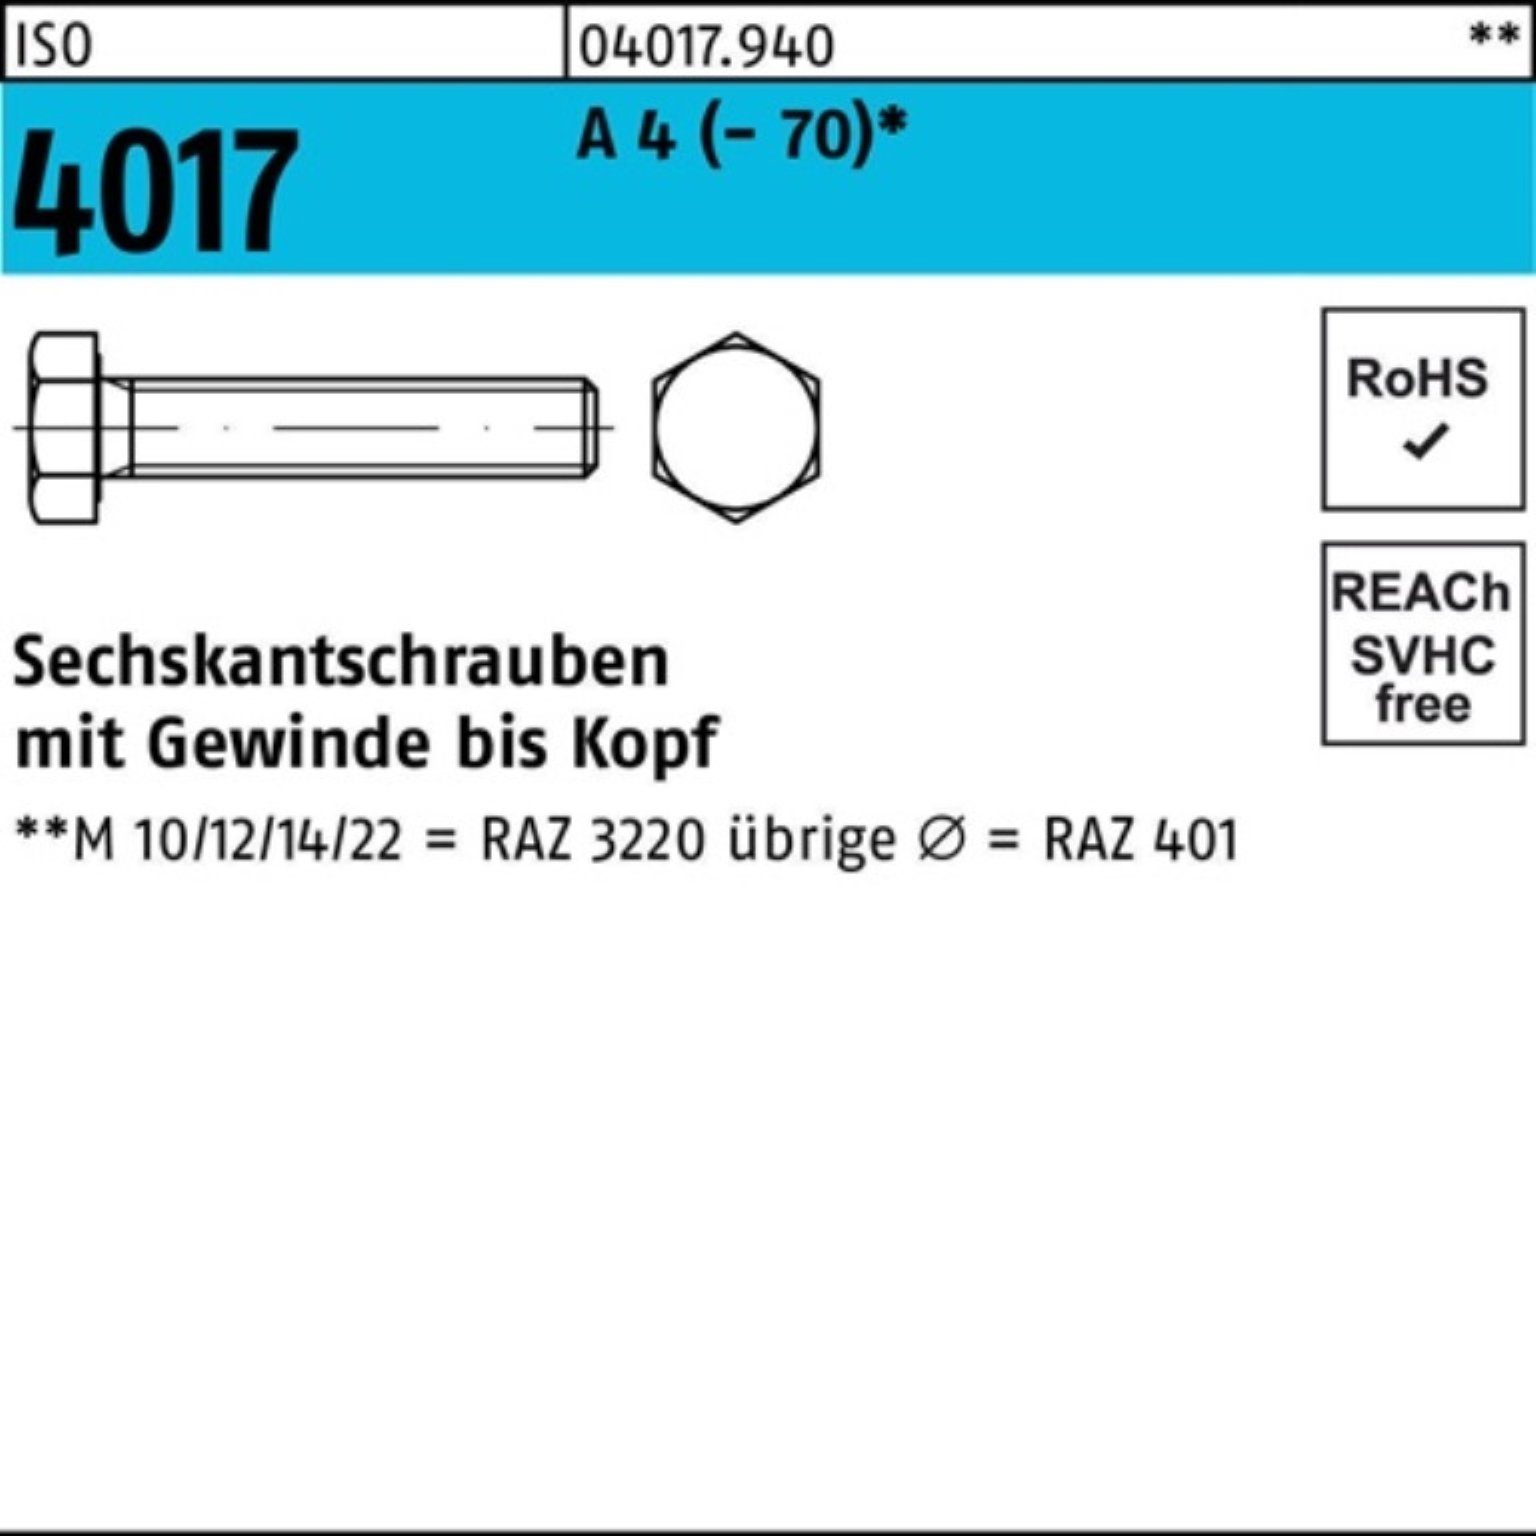 4017 Sechskantschraube 1 (70) 100er A VG Sechskantschraube Bufab M10x Stück 4 Pack ISO 180